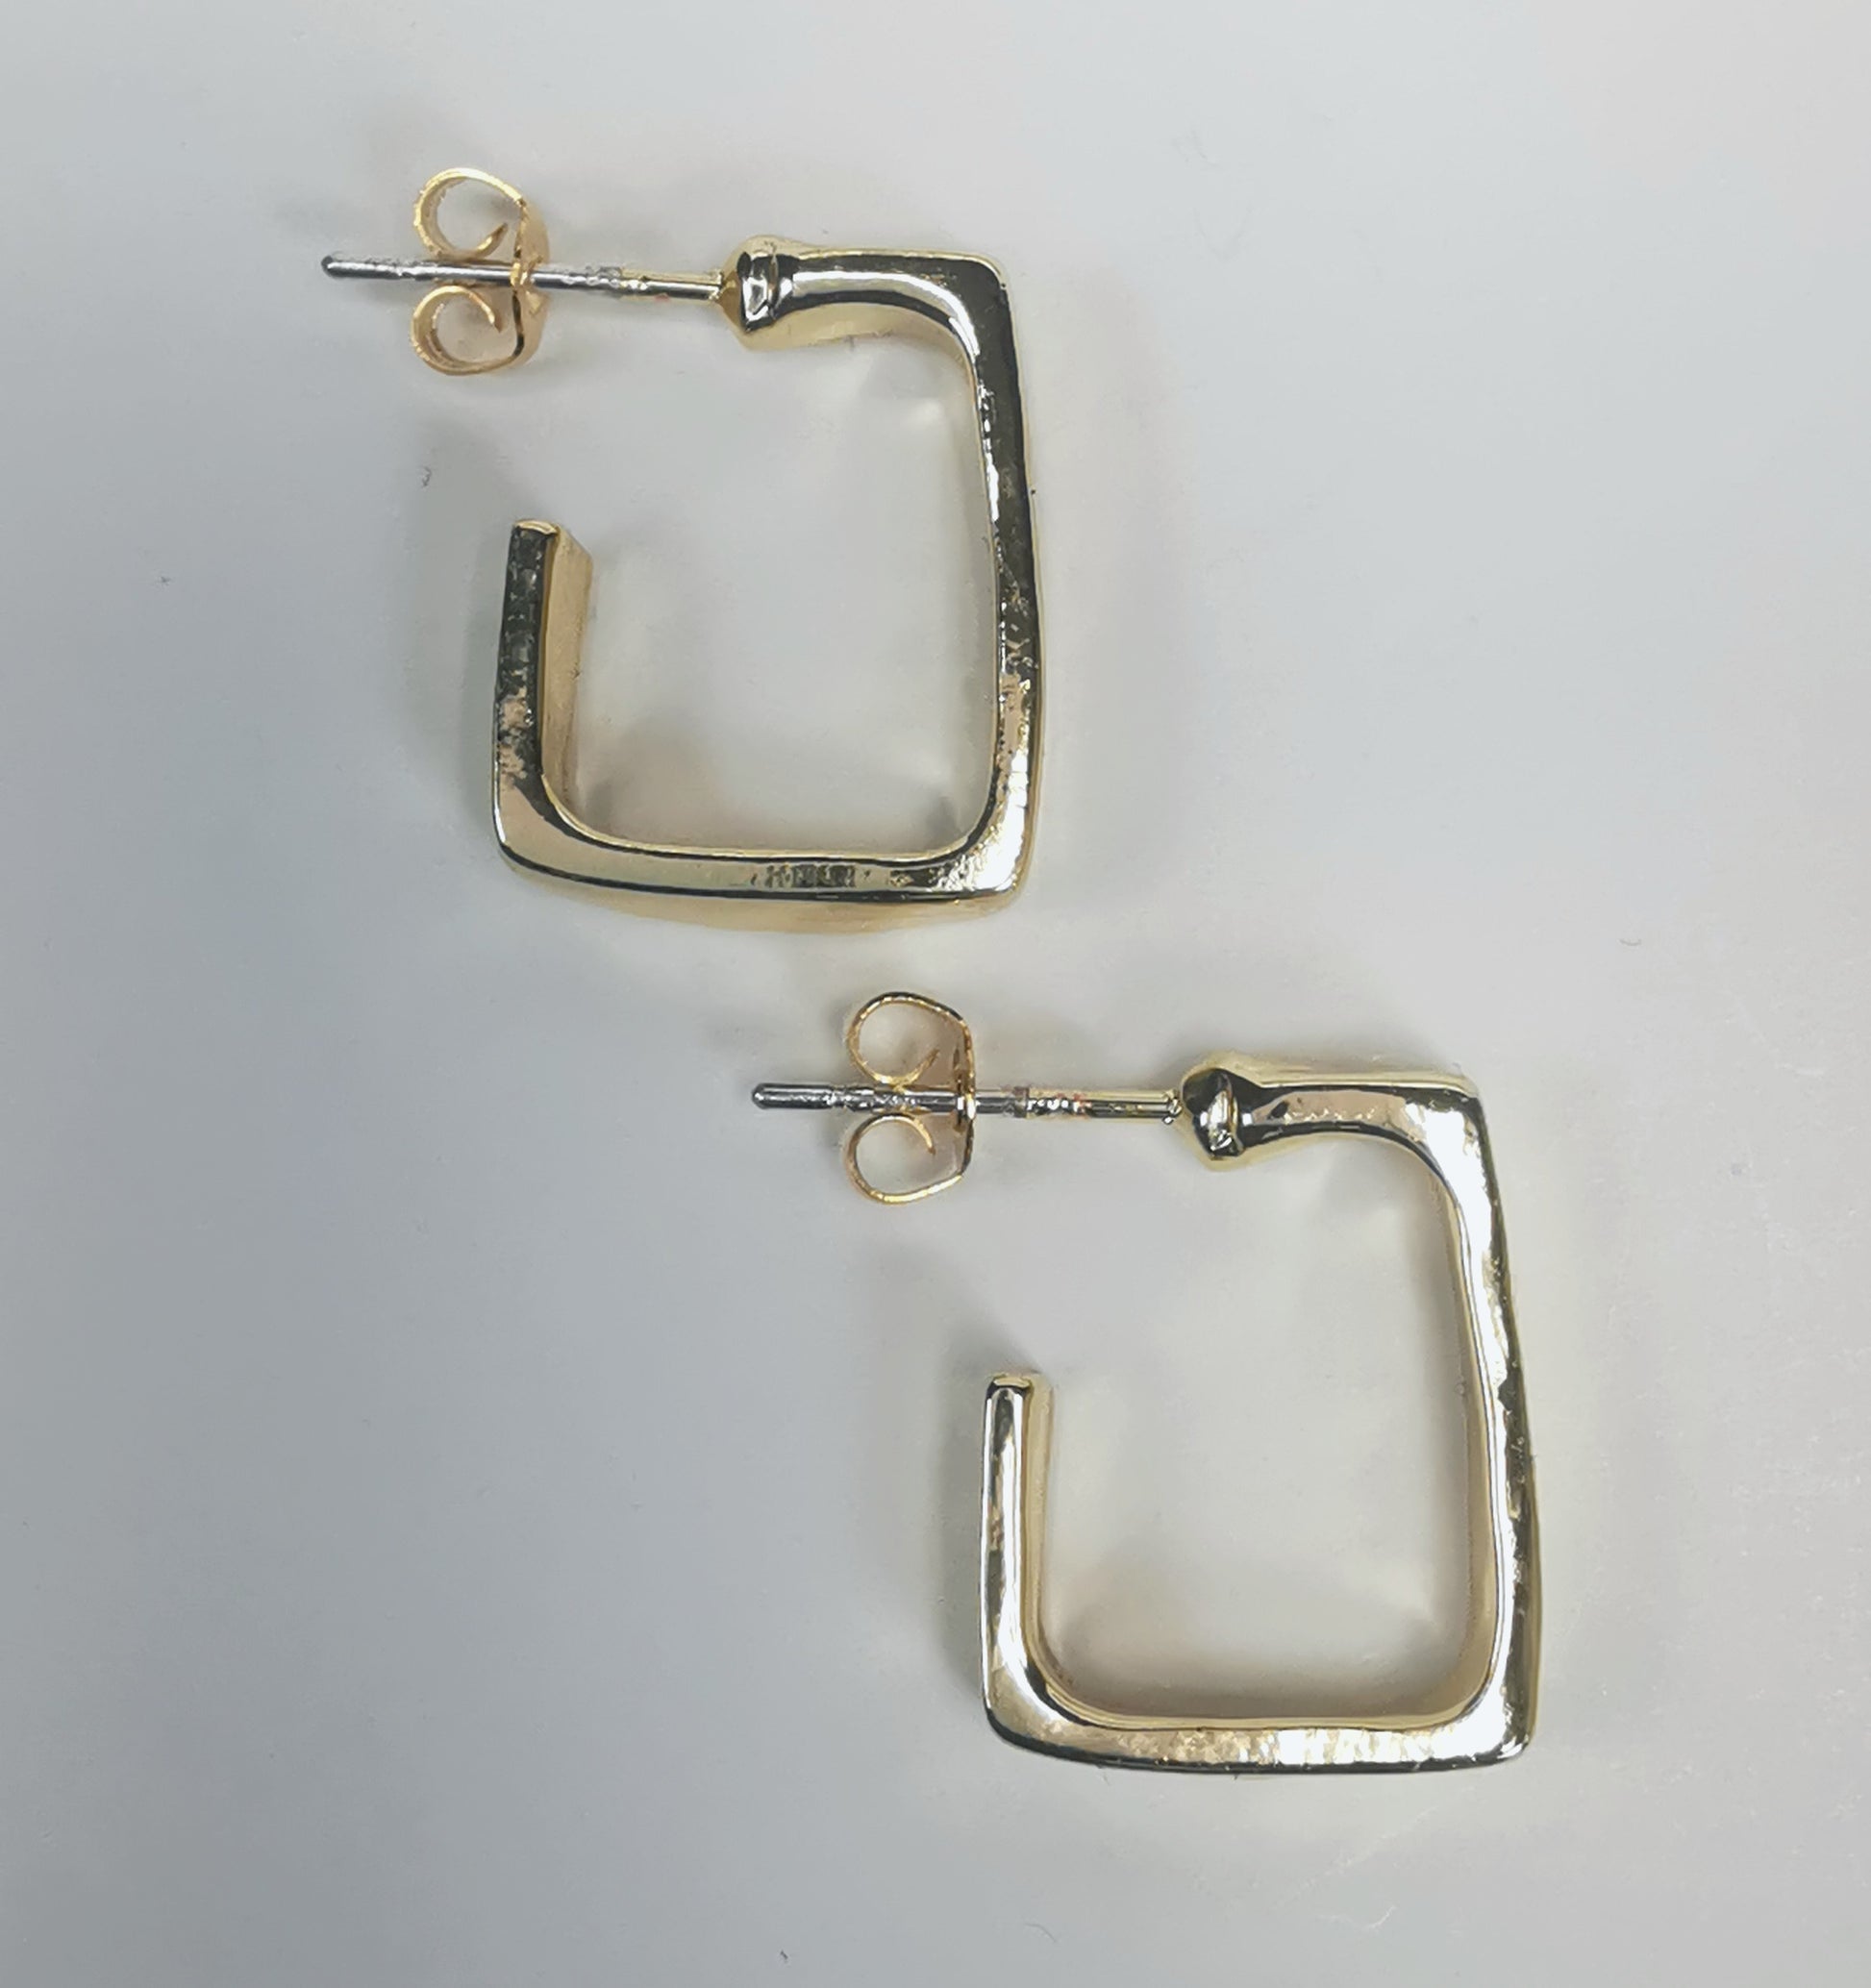 Boucles d'oreilles dorées, carrées, de 15mm de coté ,avec section rectangulaire, présentées posées sur fond blanc, cote à cote, la boucle droite décalée vers le bas. Vue de dessus.